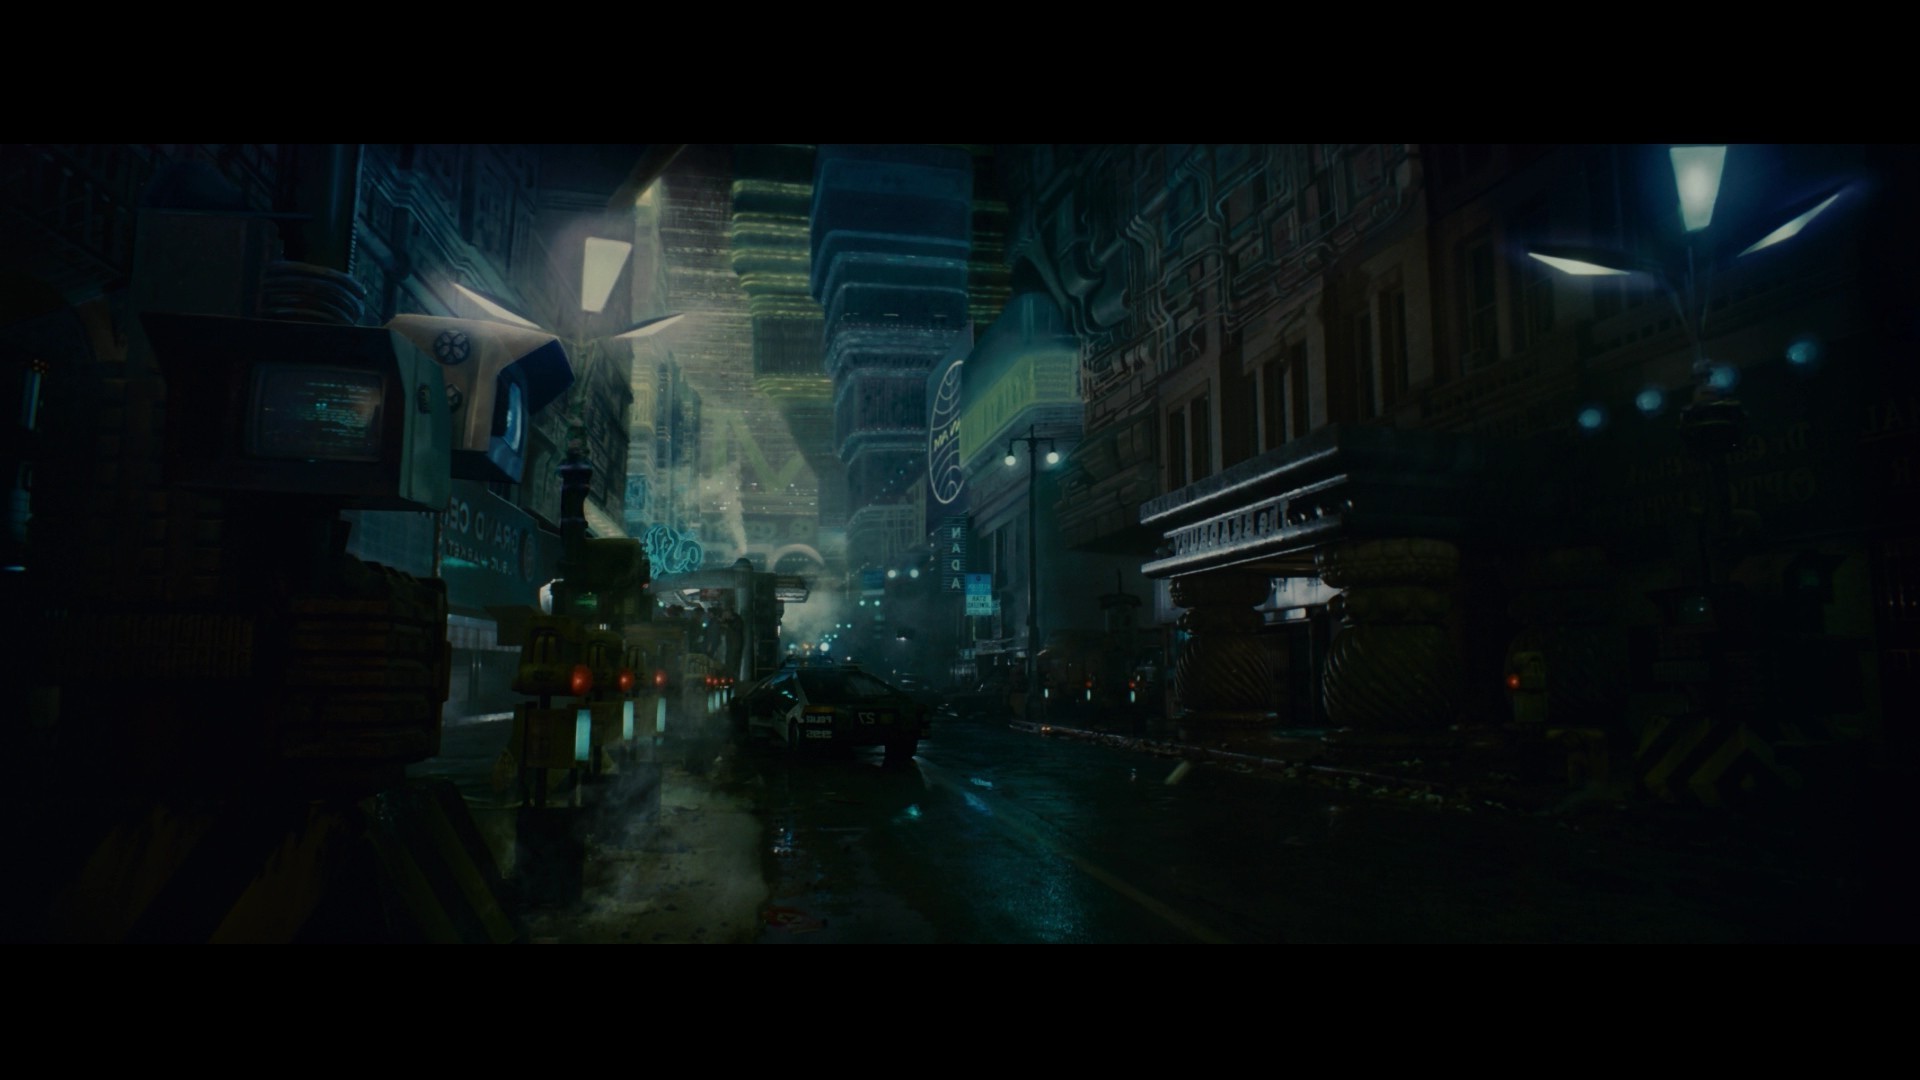 Blade Runner Wallpaper 71 Images 5885